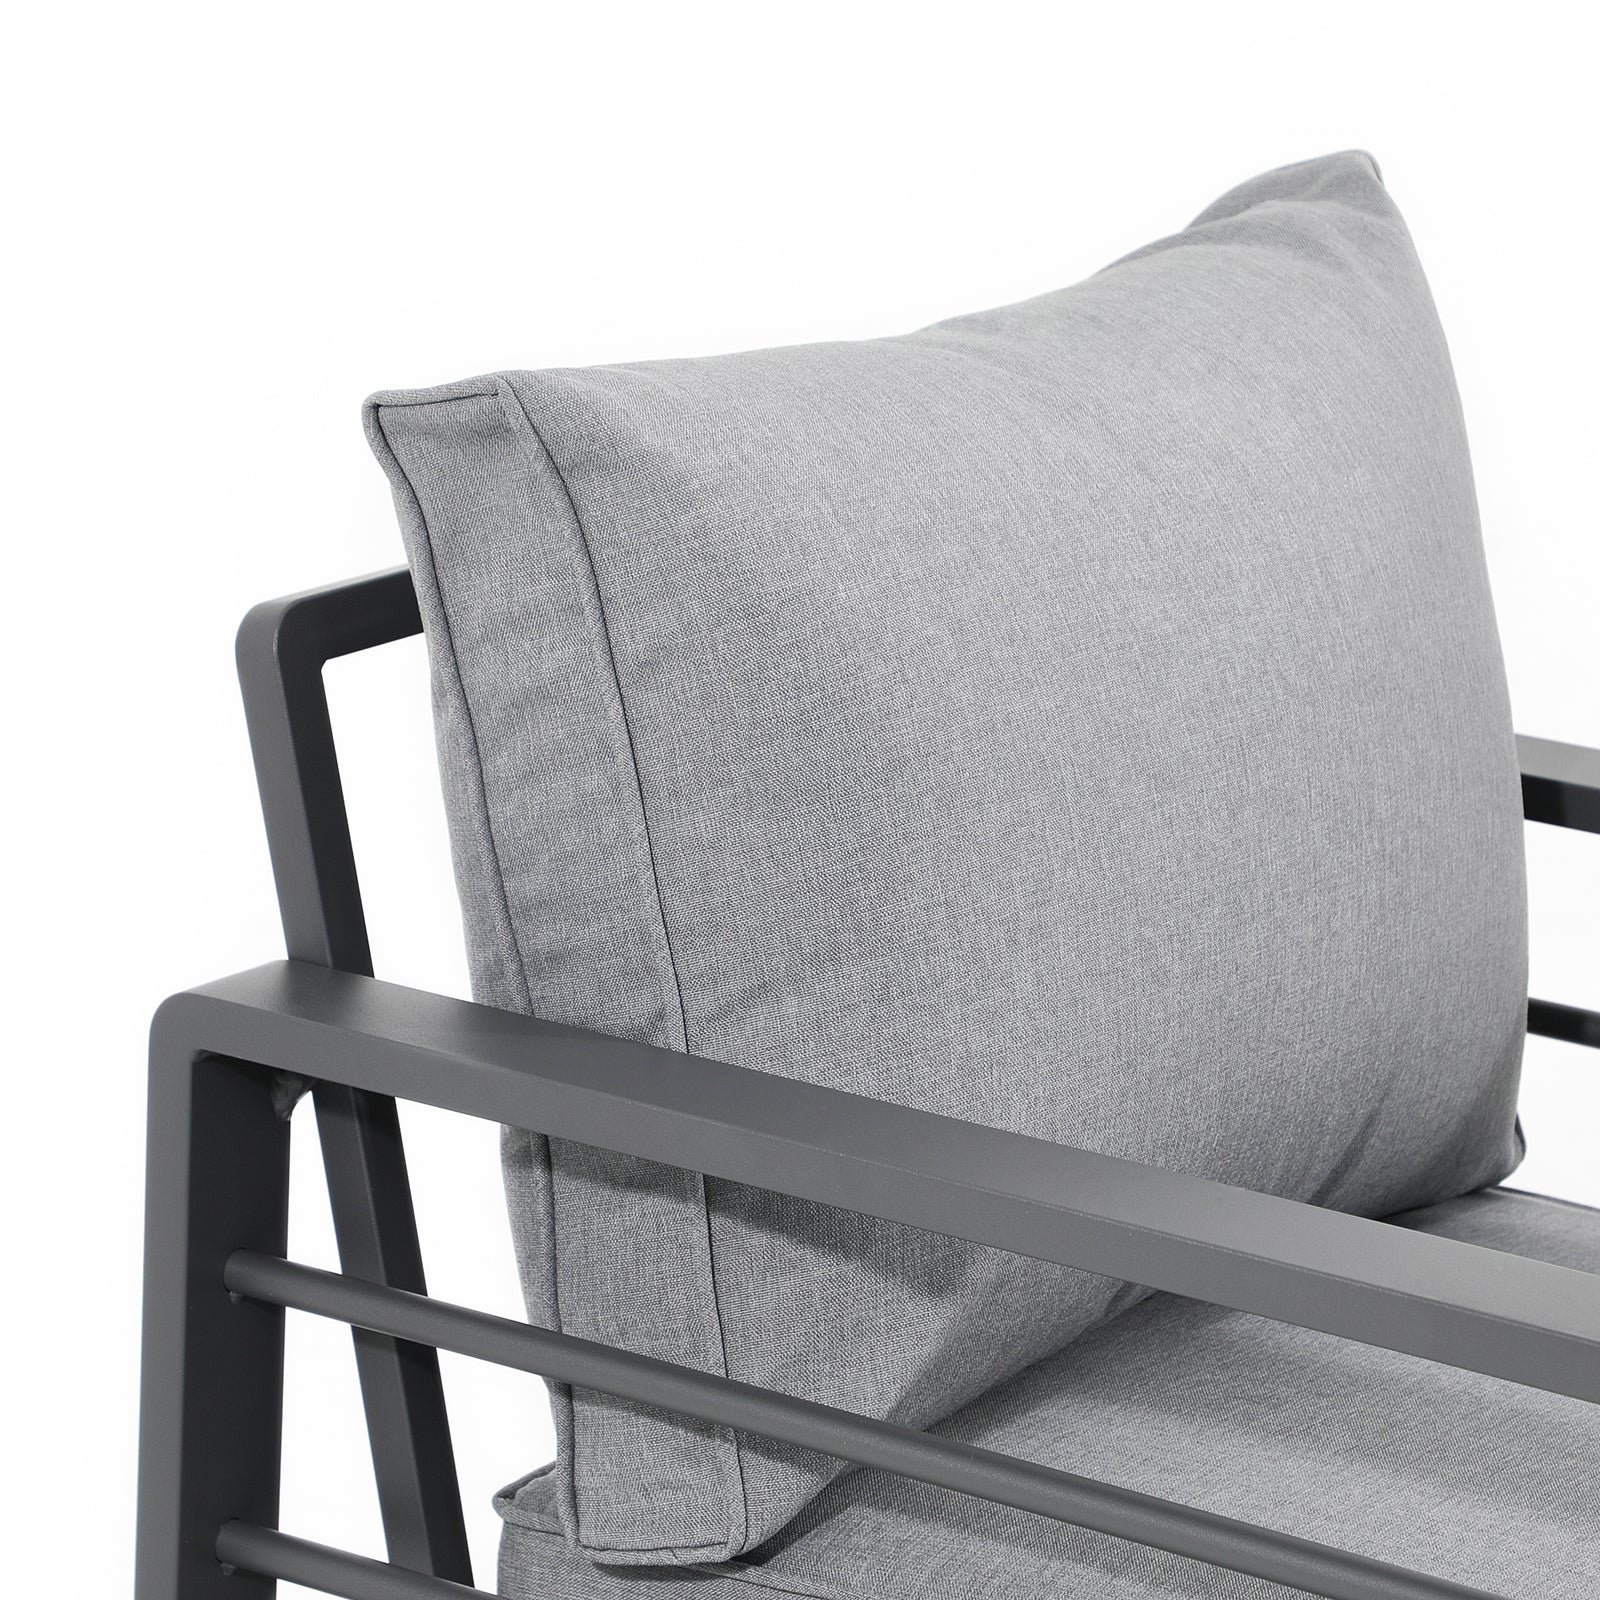 Salina outdoor lounge Chairs with aluminum frame, grey cushions, close-up view Jardina Furniture